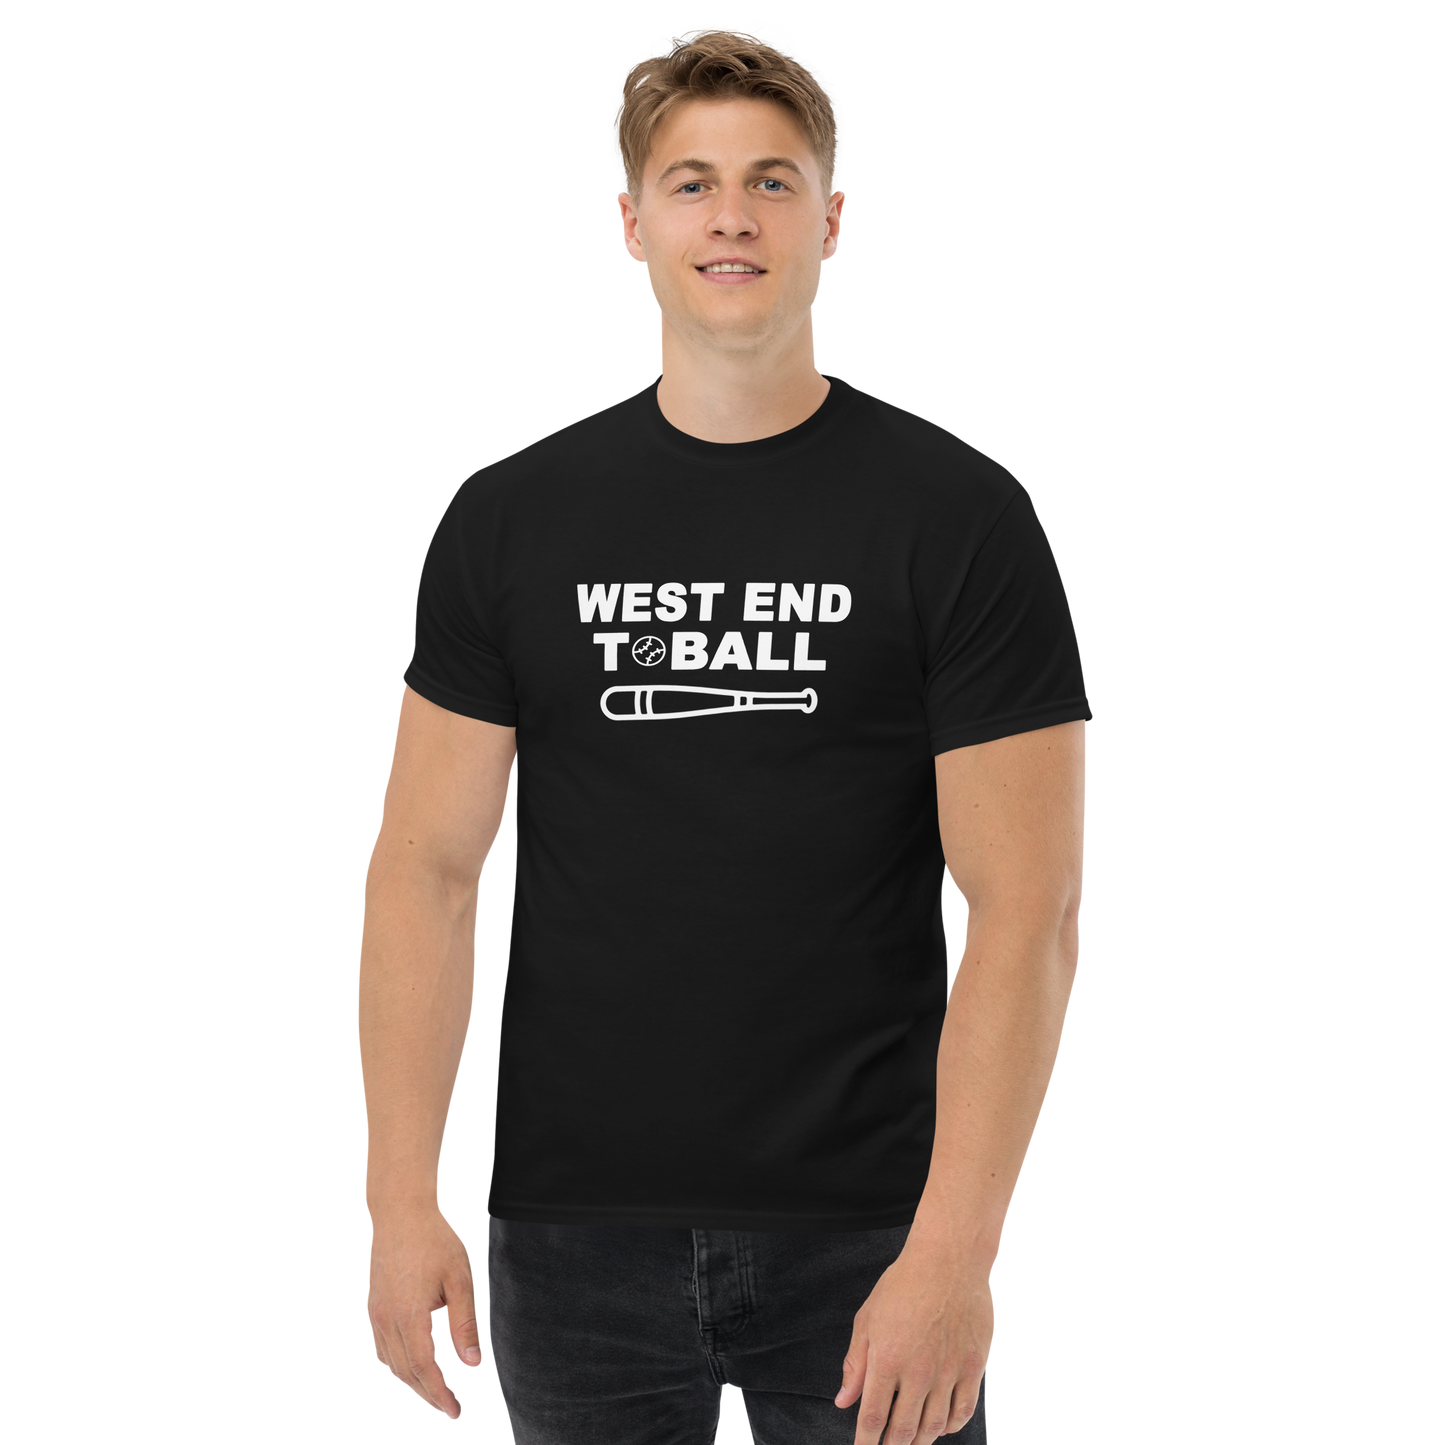 West End T-Ball T-shirt